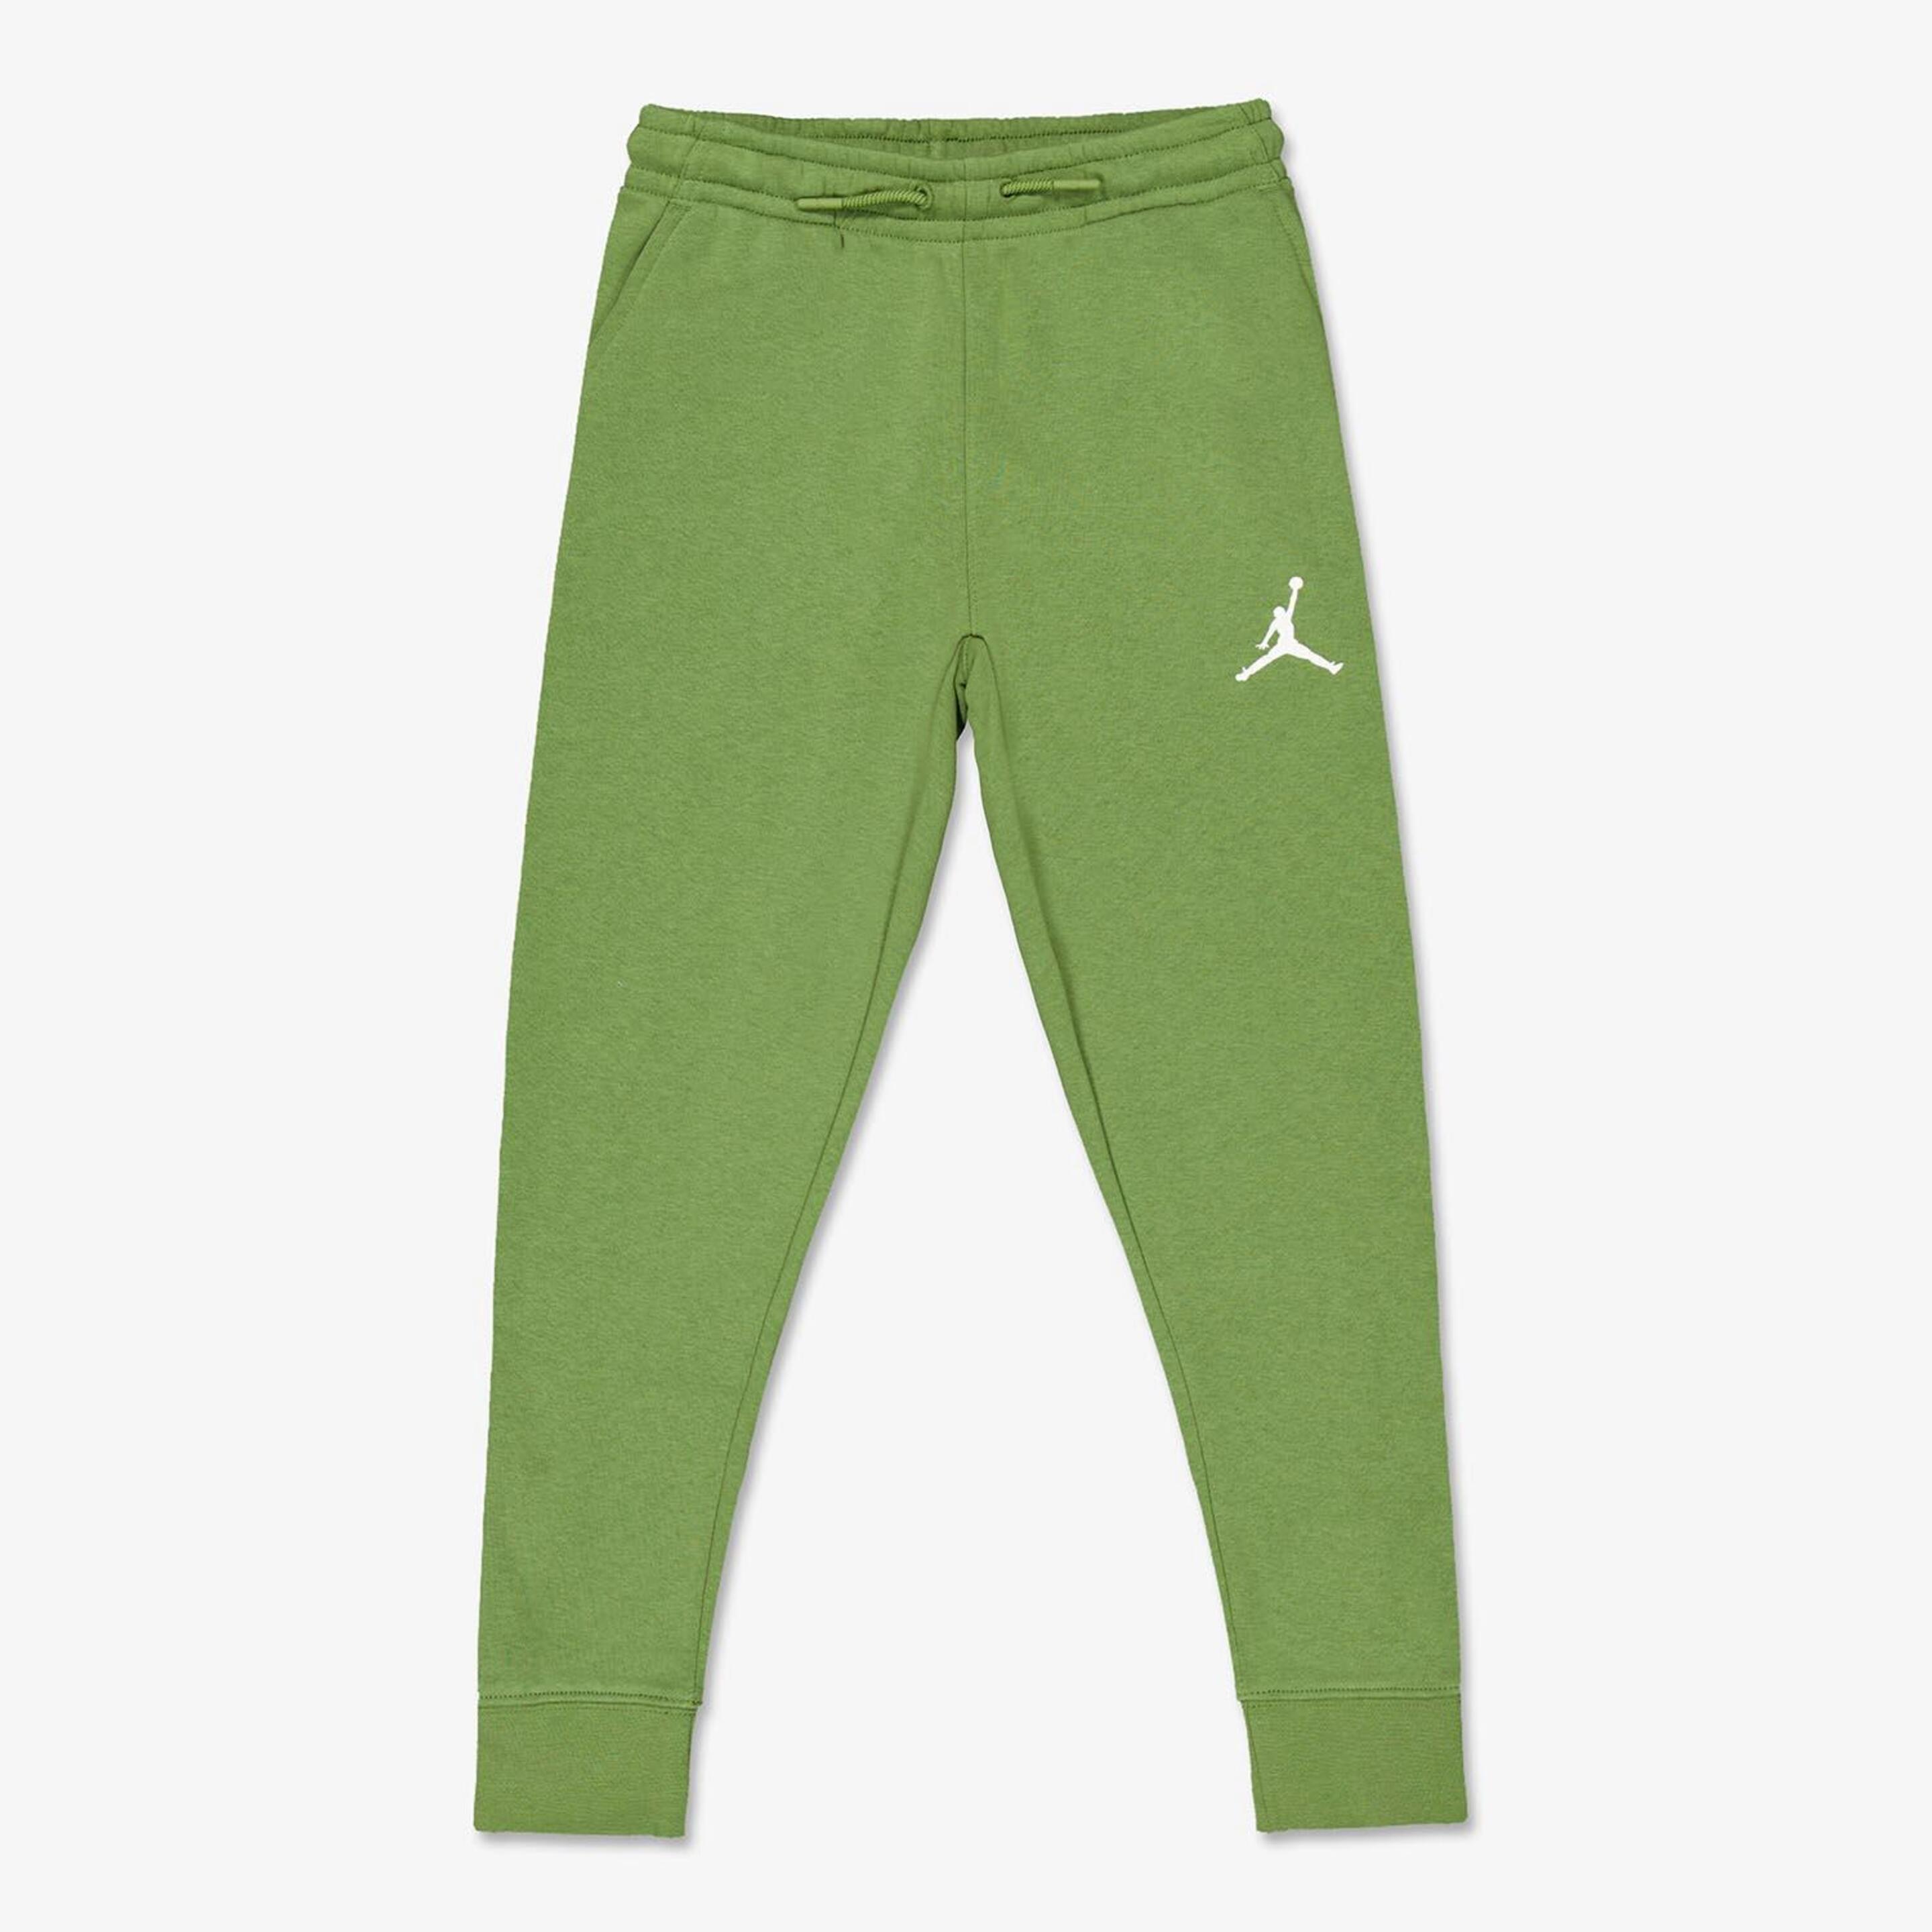 Calças Jordan - verde - Calças Rapaz